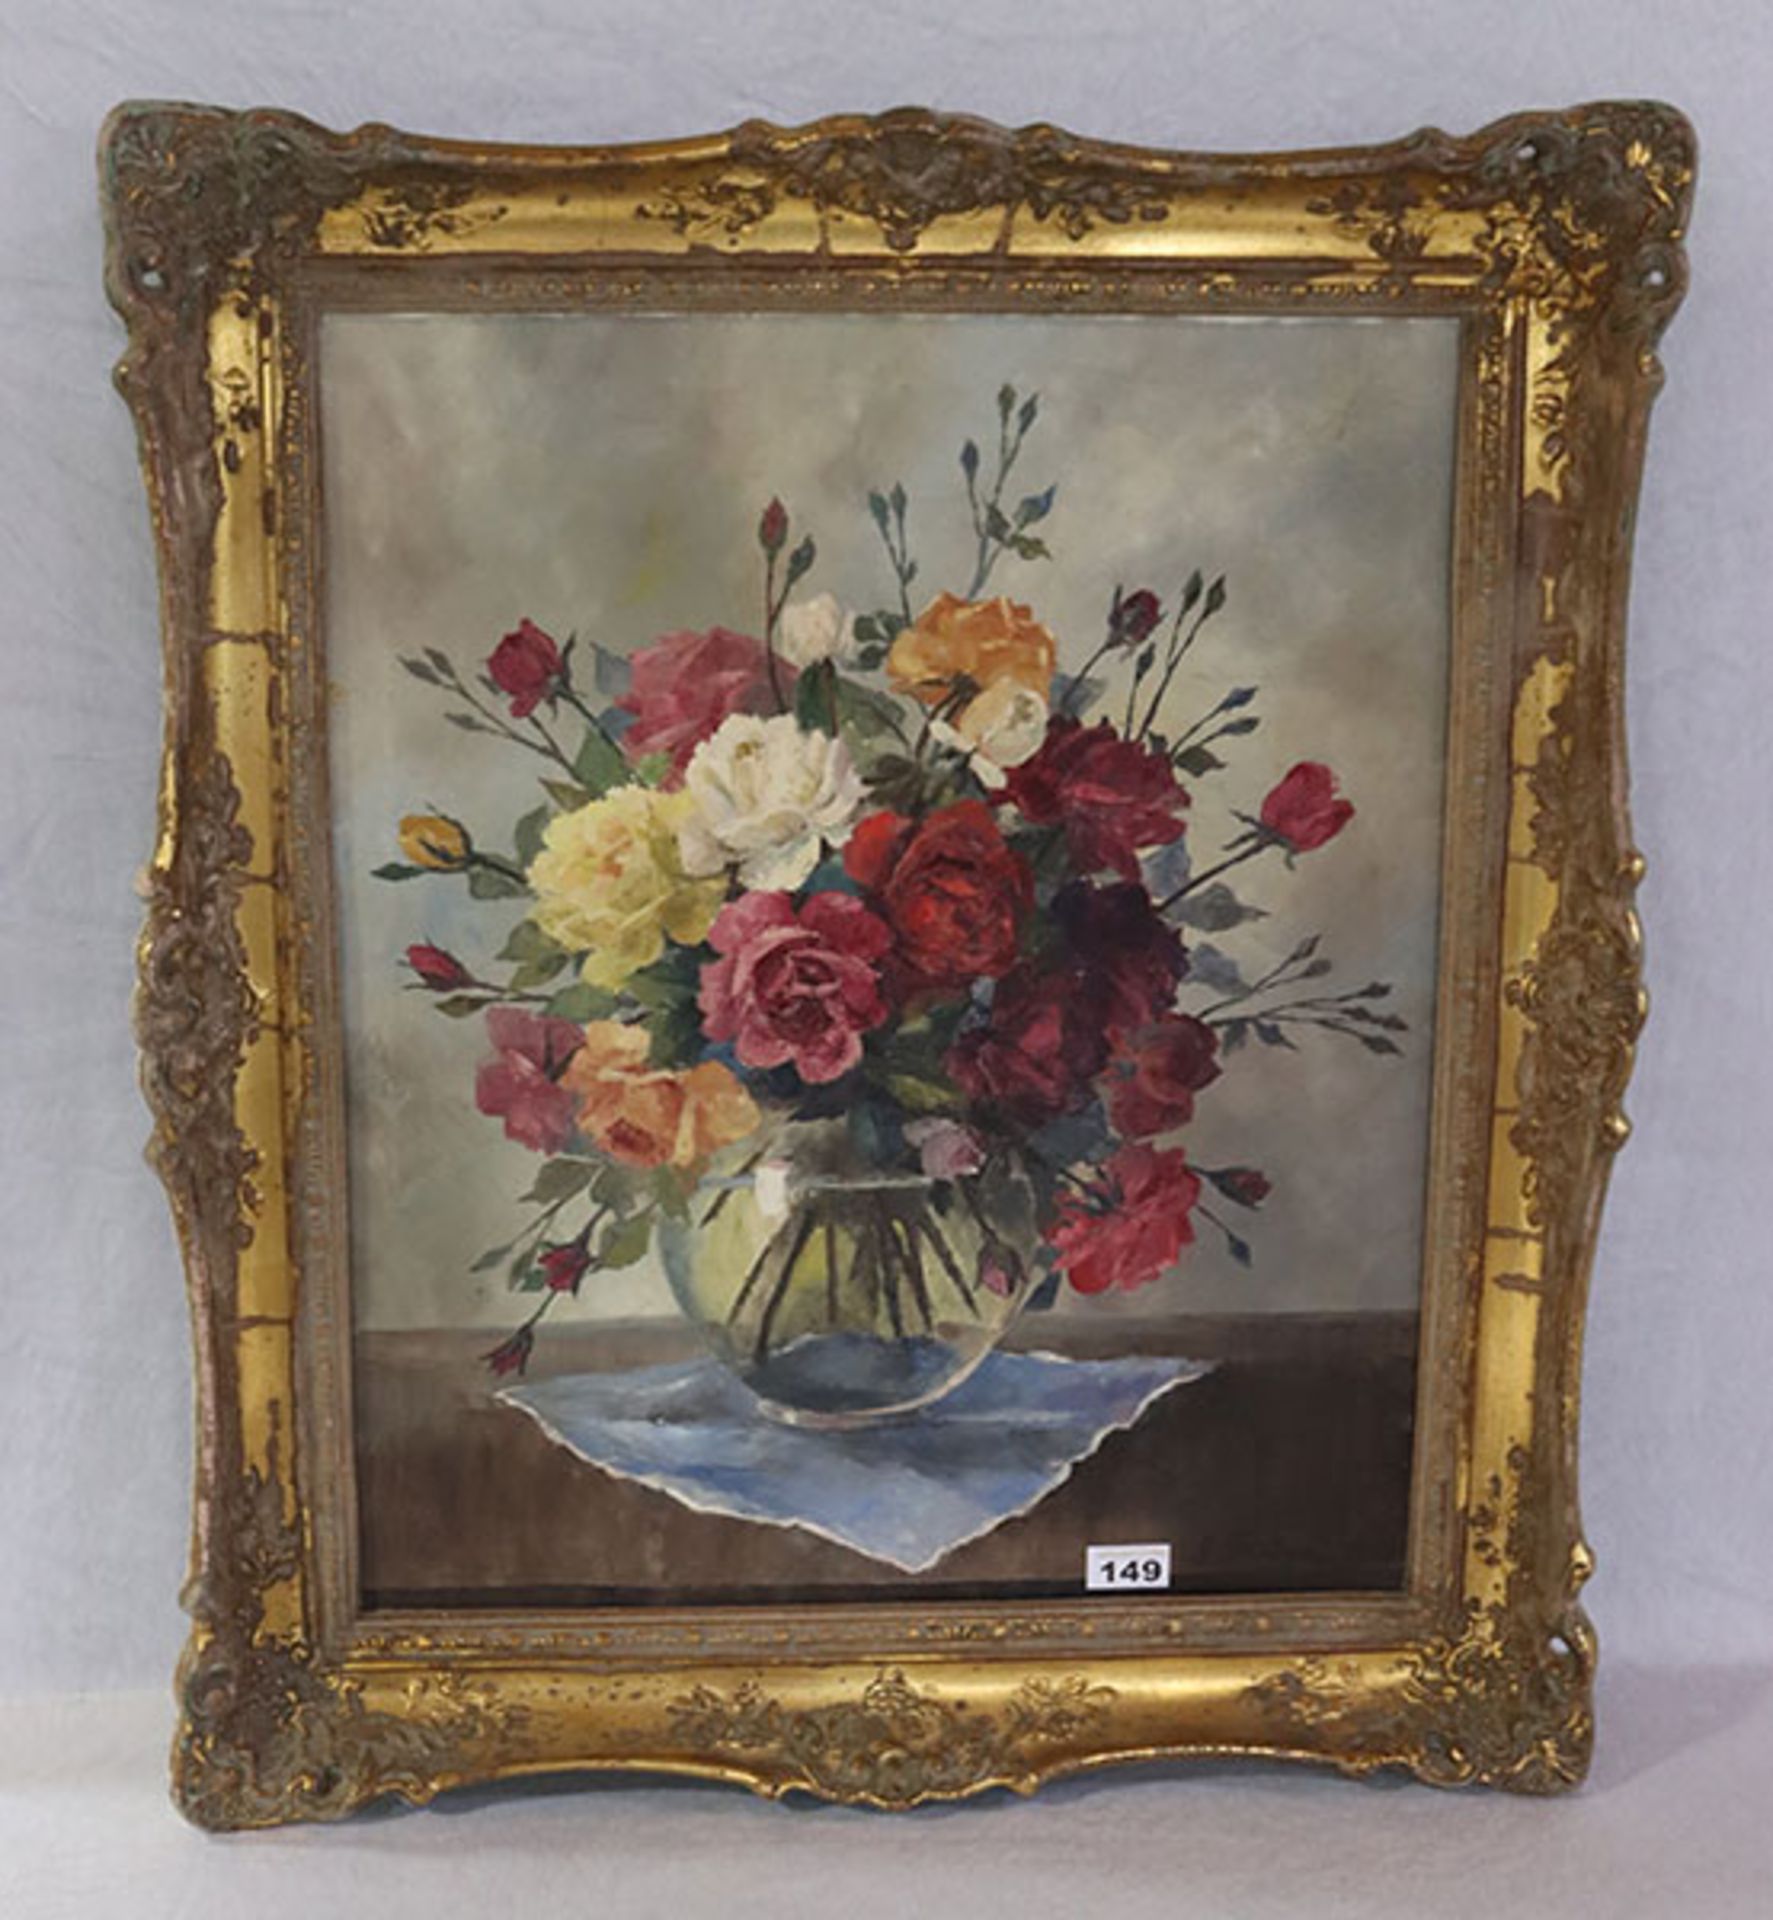 Gemälde ÖL/LW 'Blumen in Vase', signiert G. Reiger ? 1958, gerahmt, Rahmen beschädigt, incl.